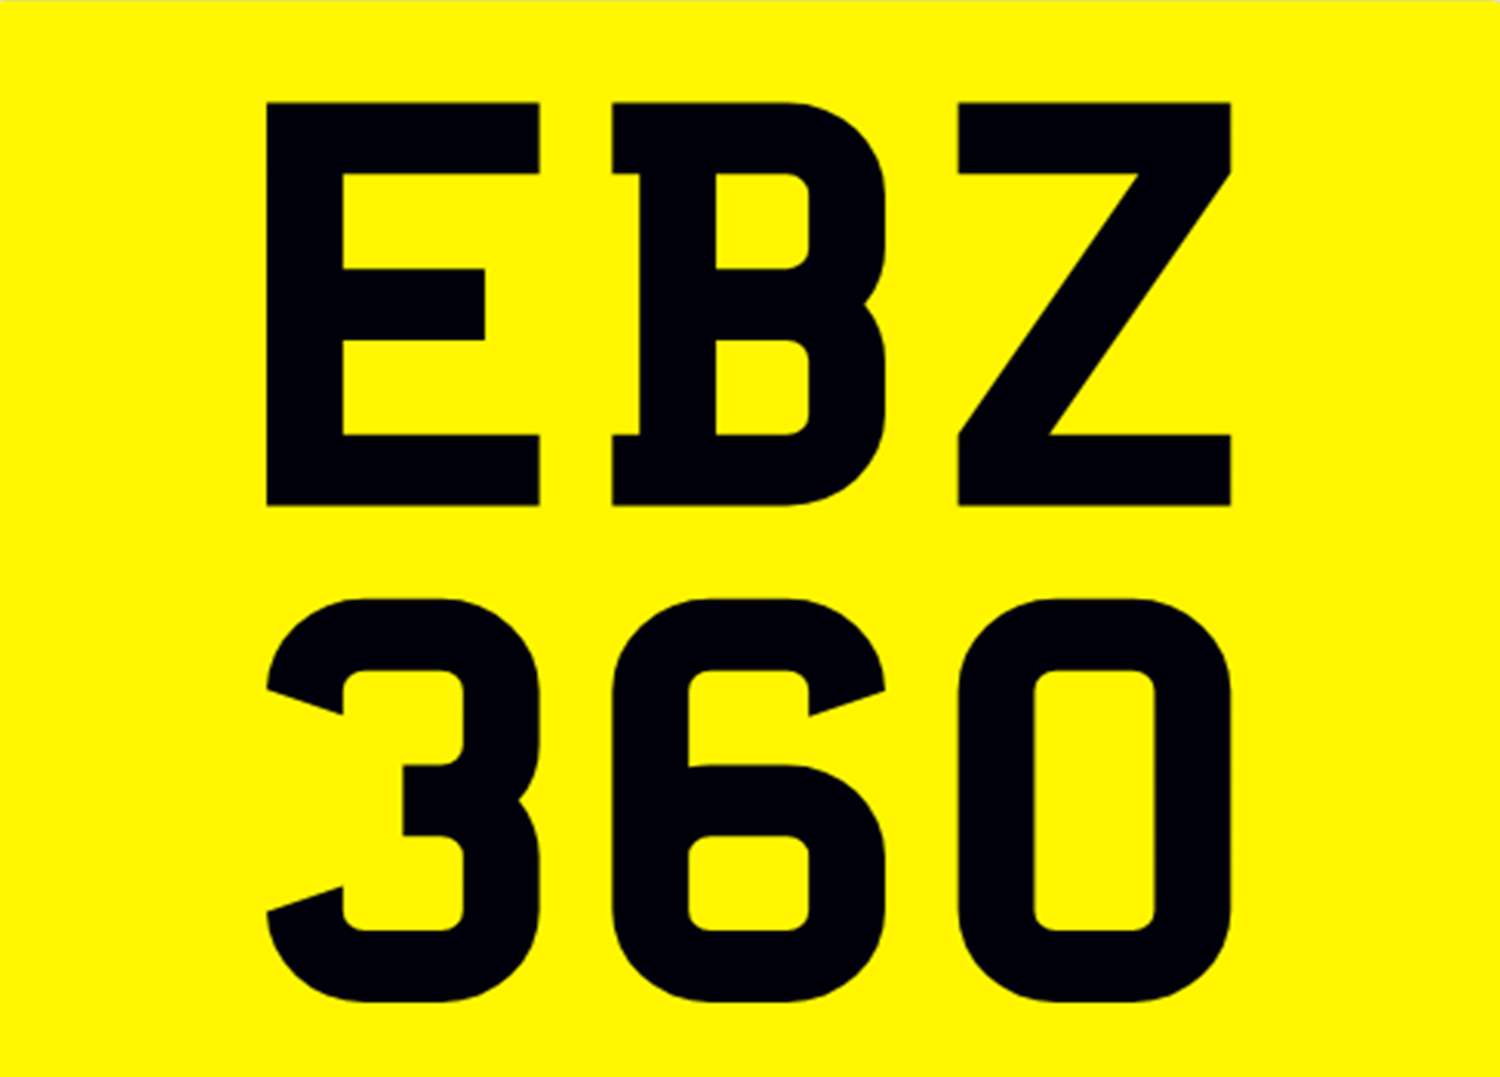 <p>&nbsp; EBZ 360 Registration Number&nbsp;</p>